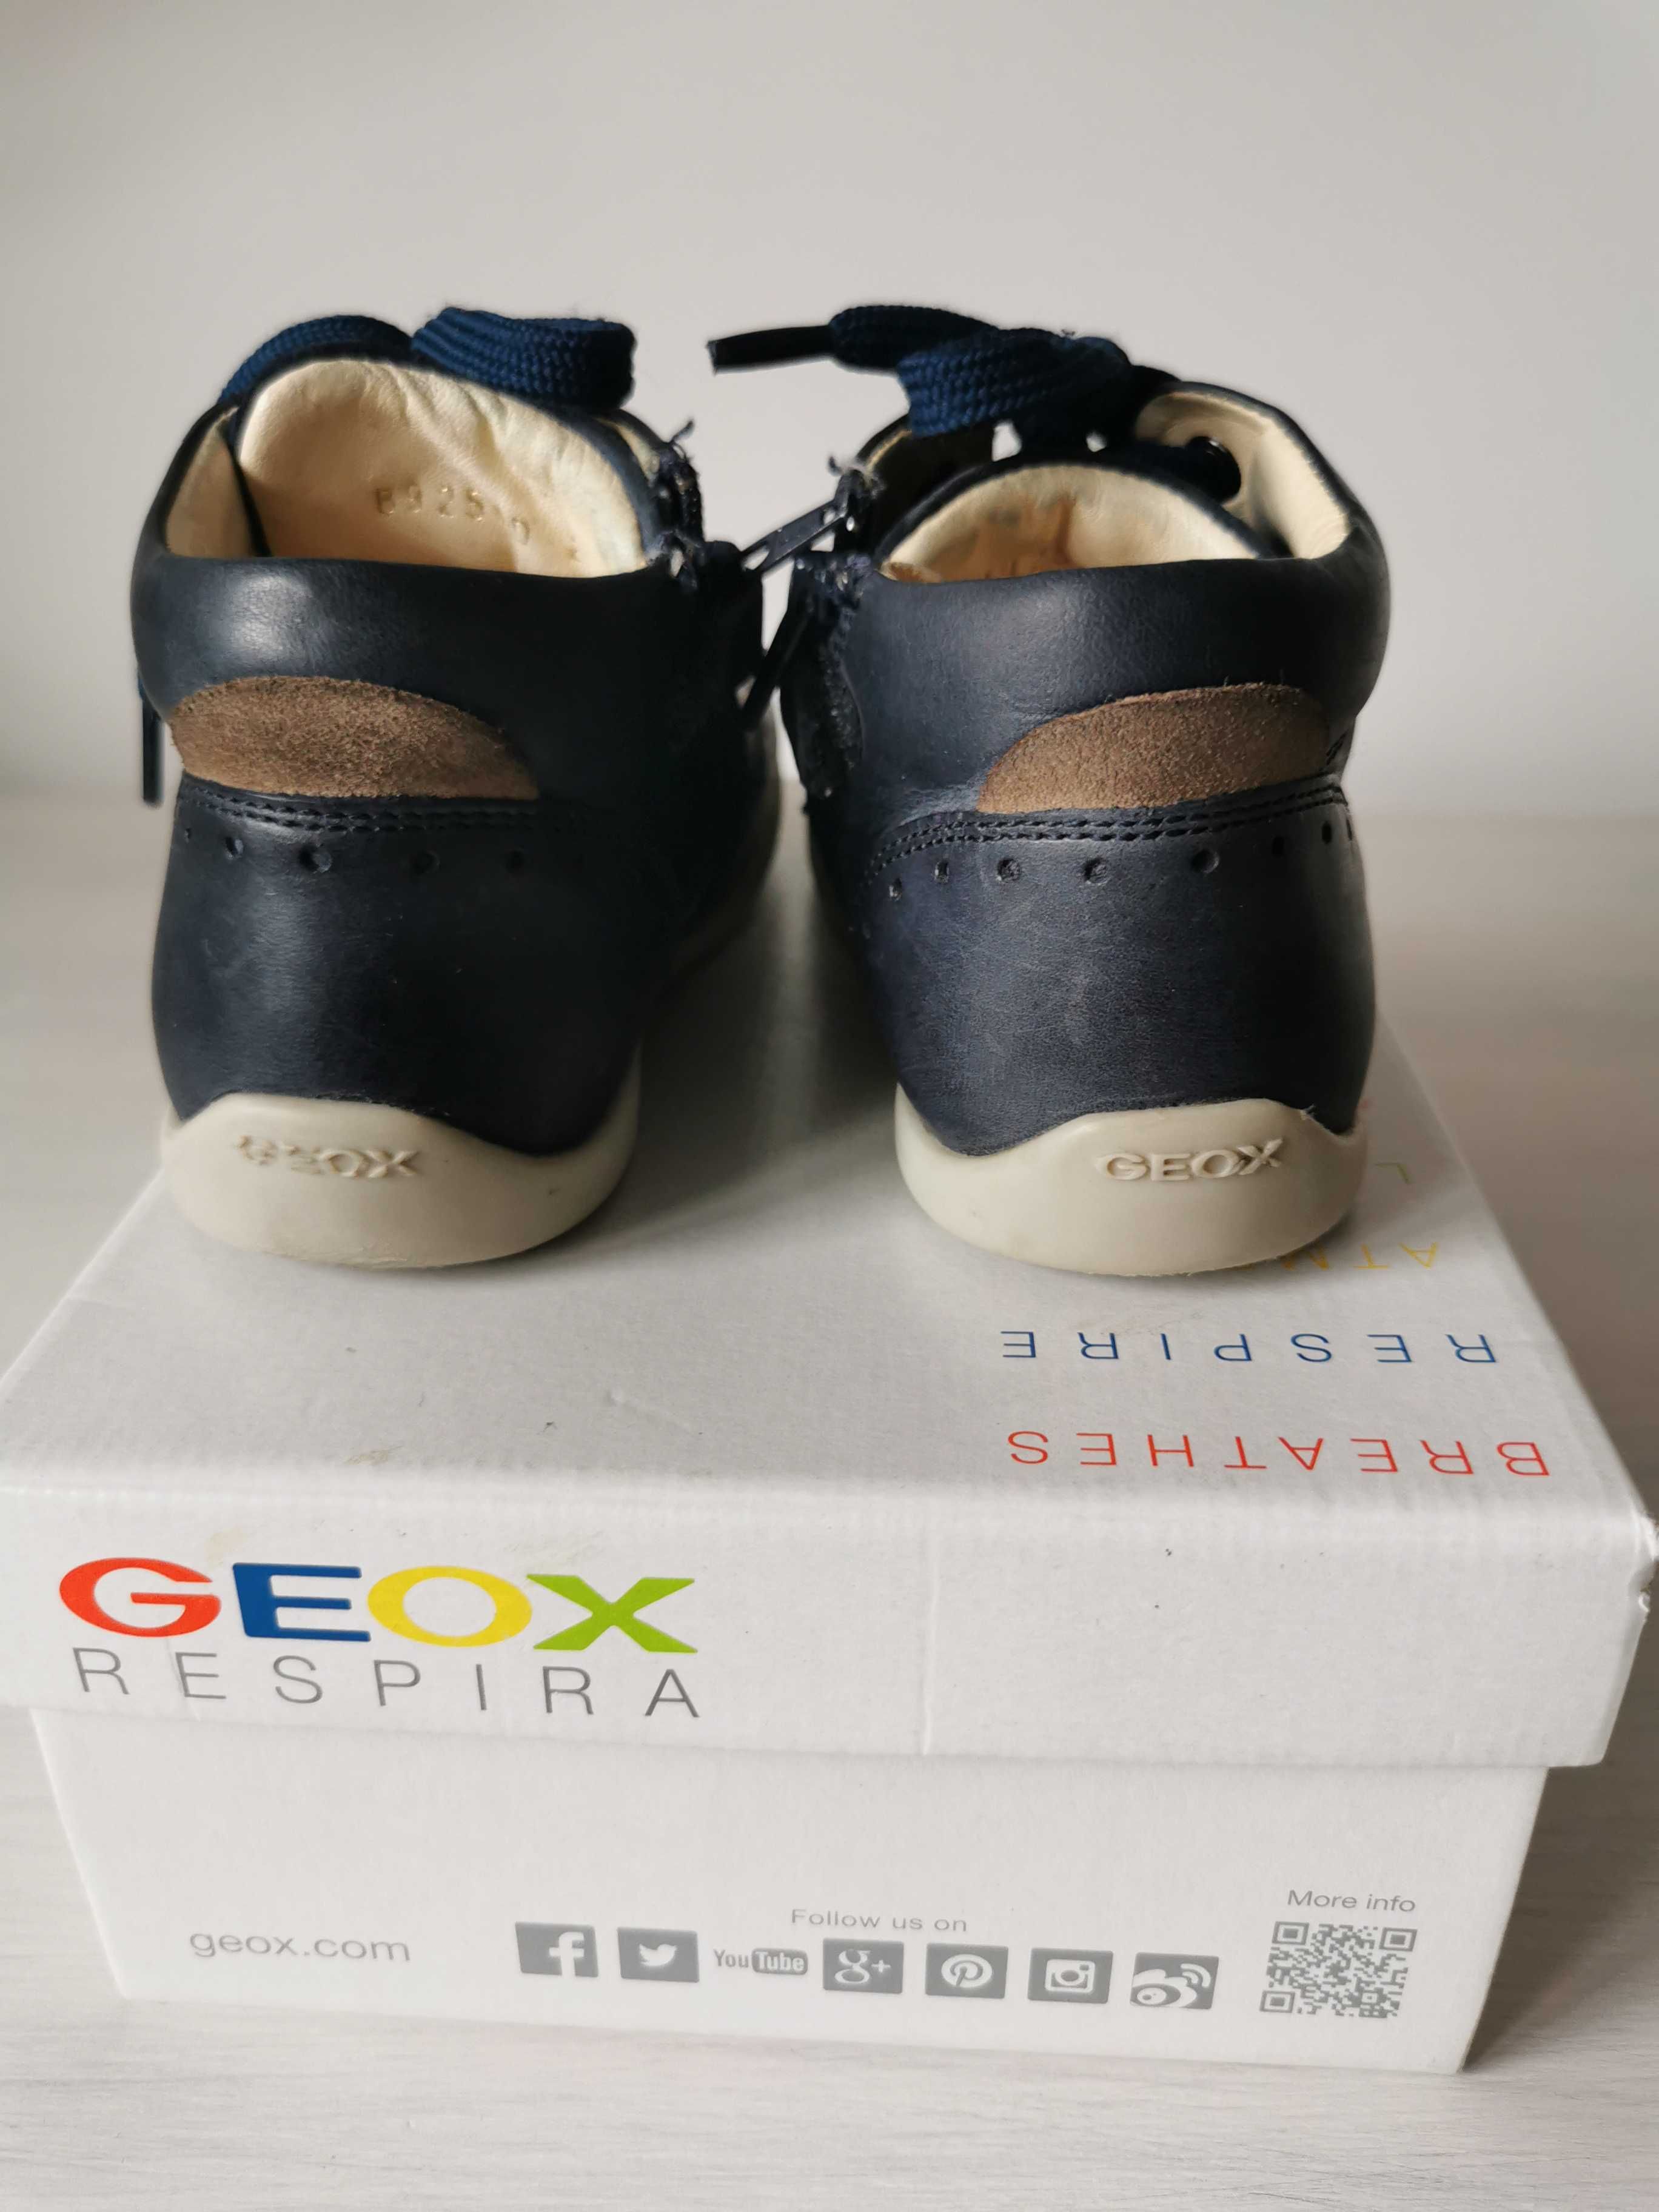 Buty przejściowe, trzewiki chłopięce Geox Respira r. 25